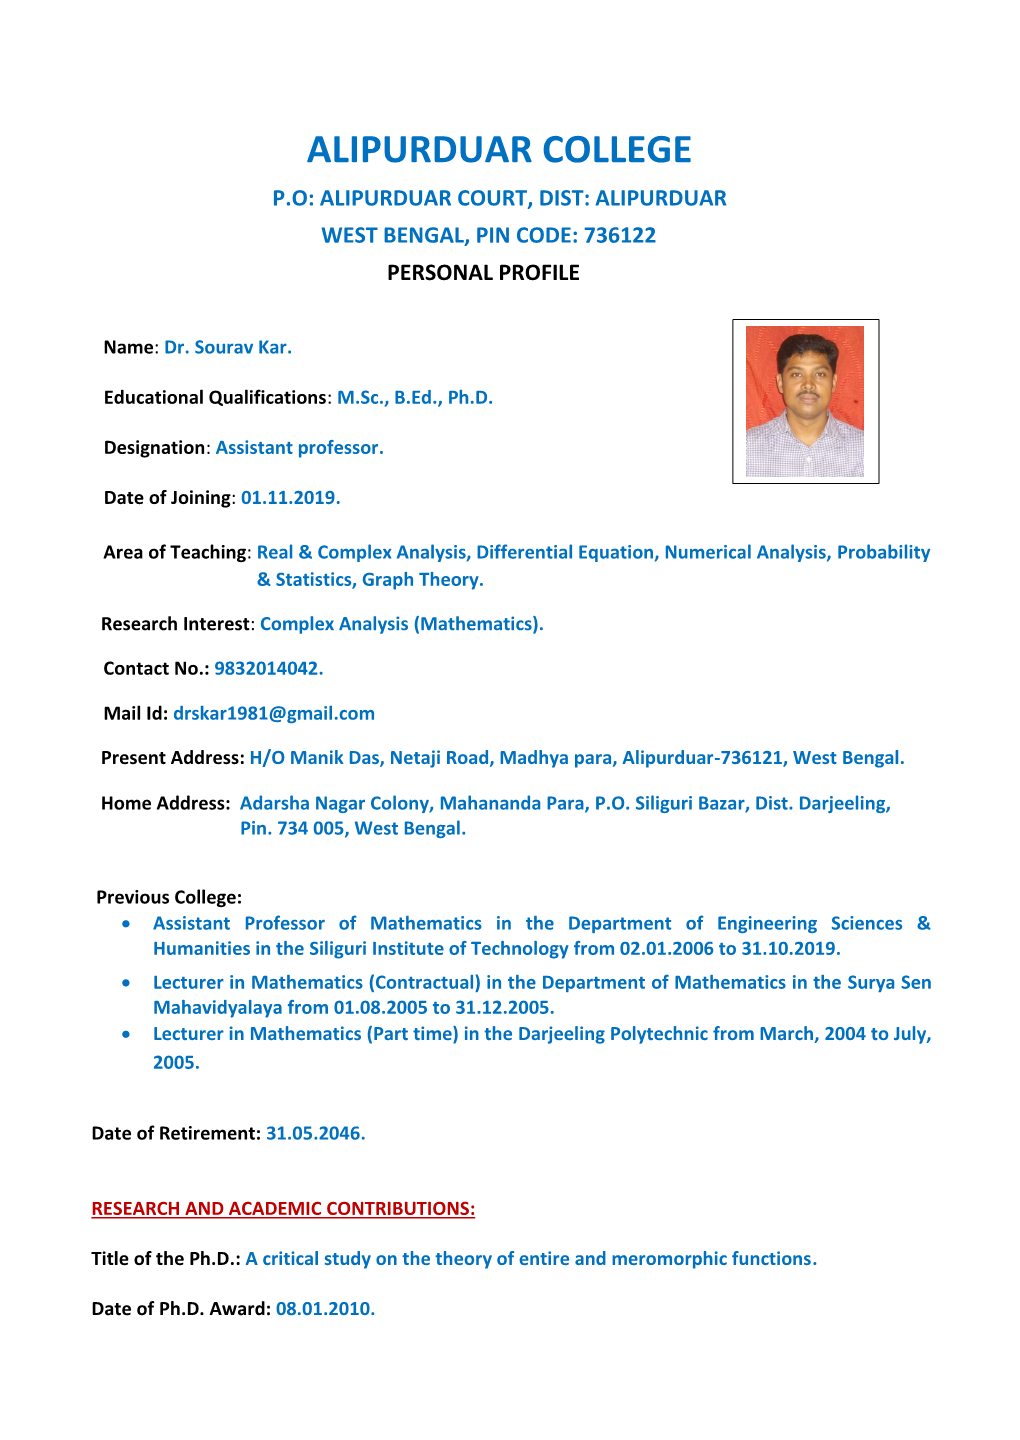 Alipurduar College P.O: Alipurduar Court, Dist: Alipurduar West Bengal, Pin Code: 736122 Personal Profile